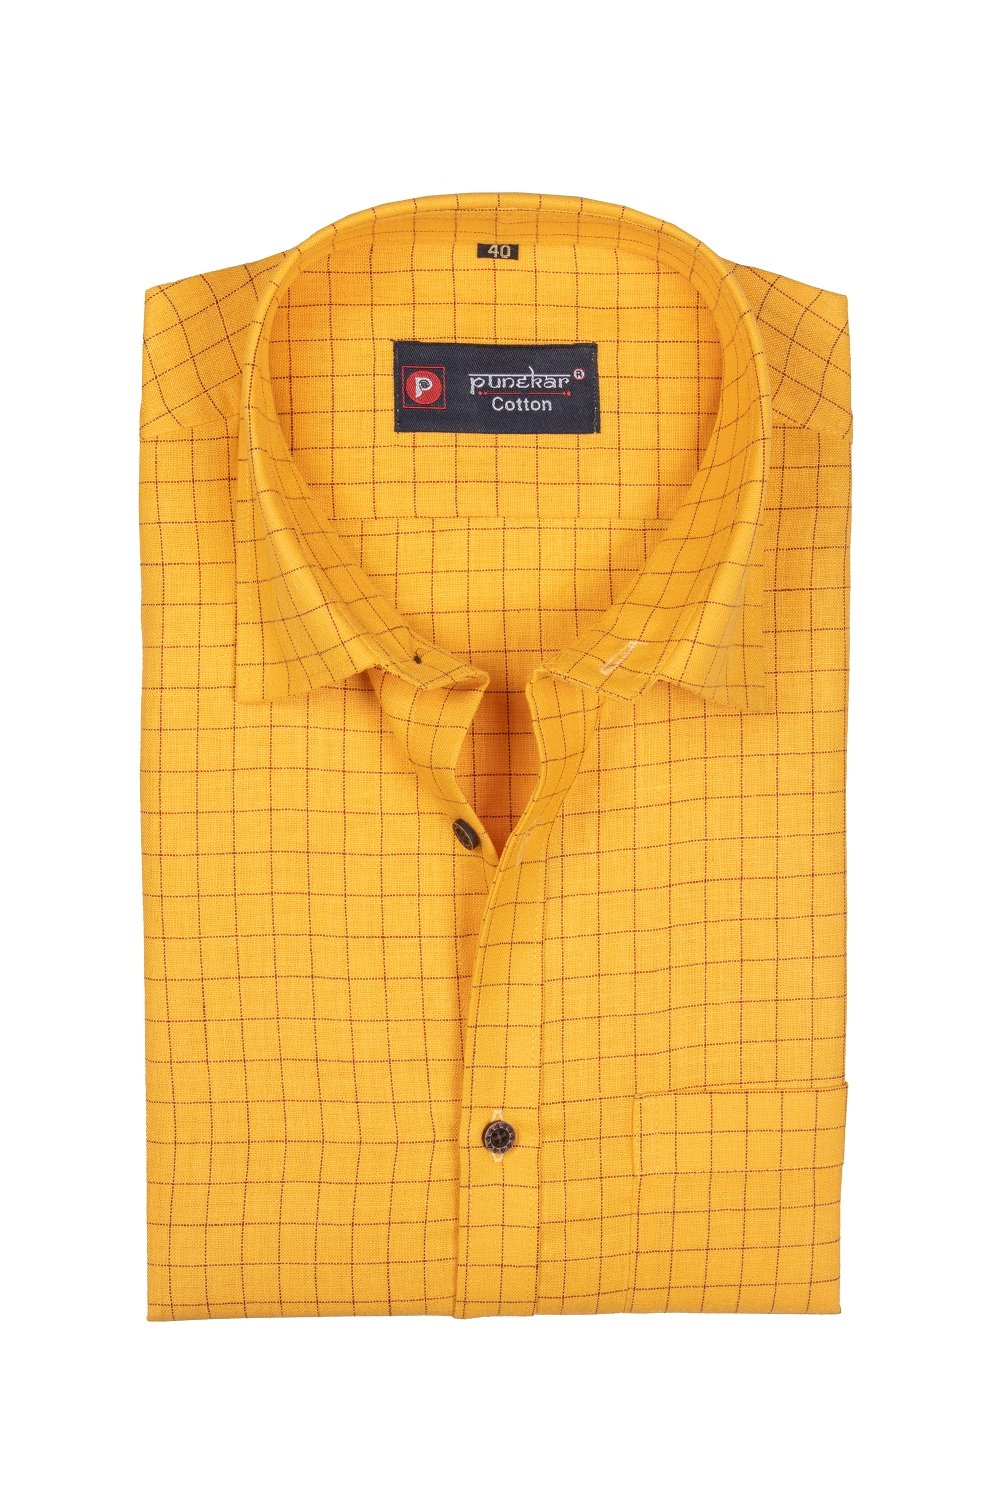 Punekar Cotton Maize Color Check Criss Cross Woven Cotton Shirt for Men&